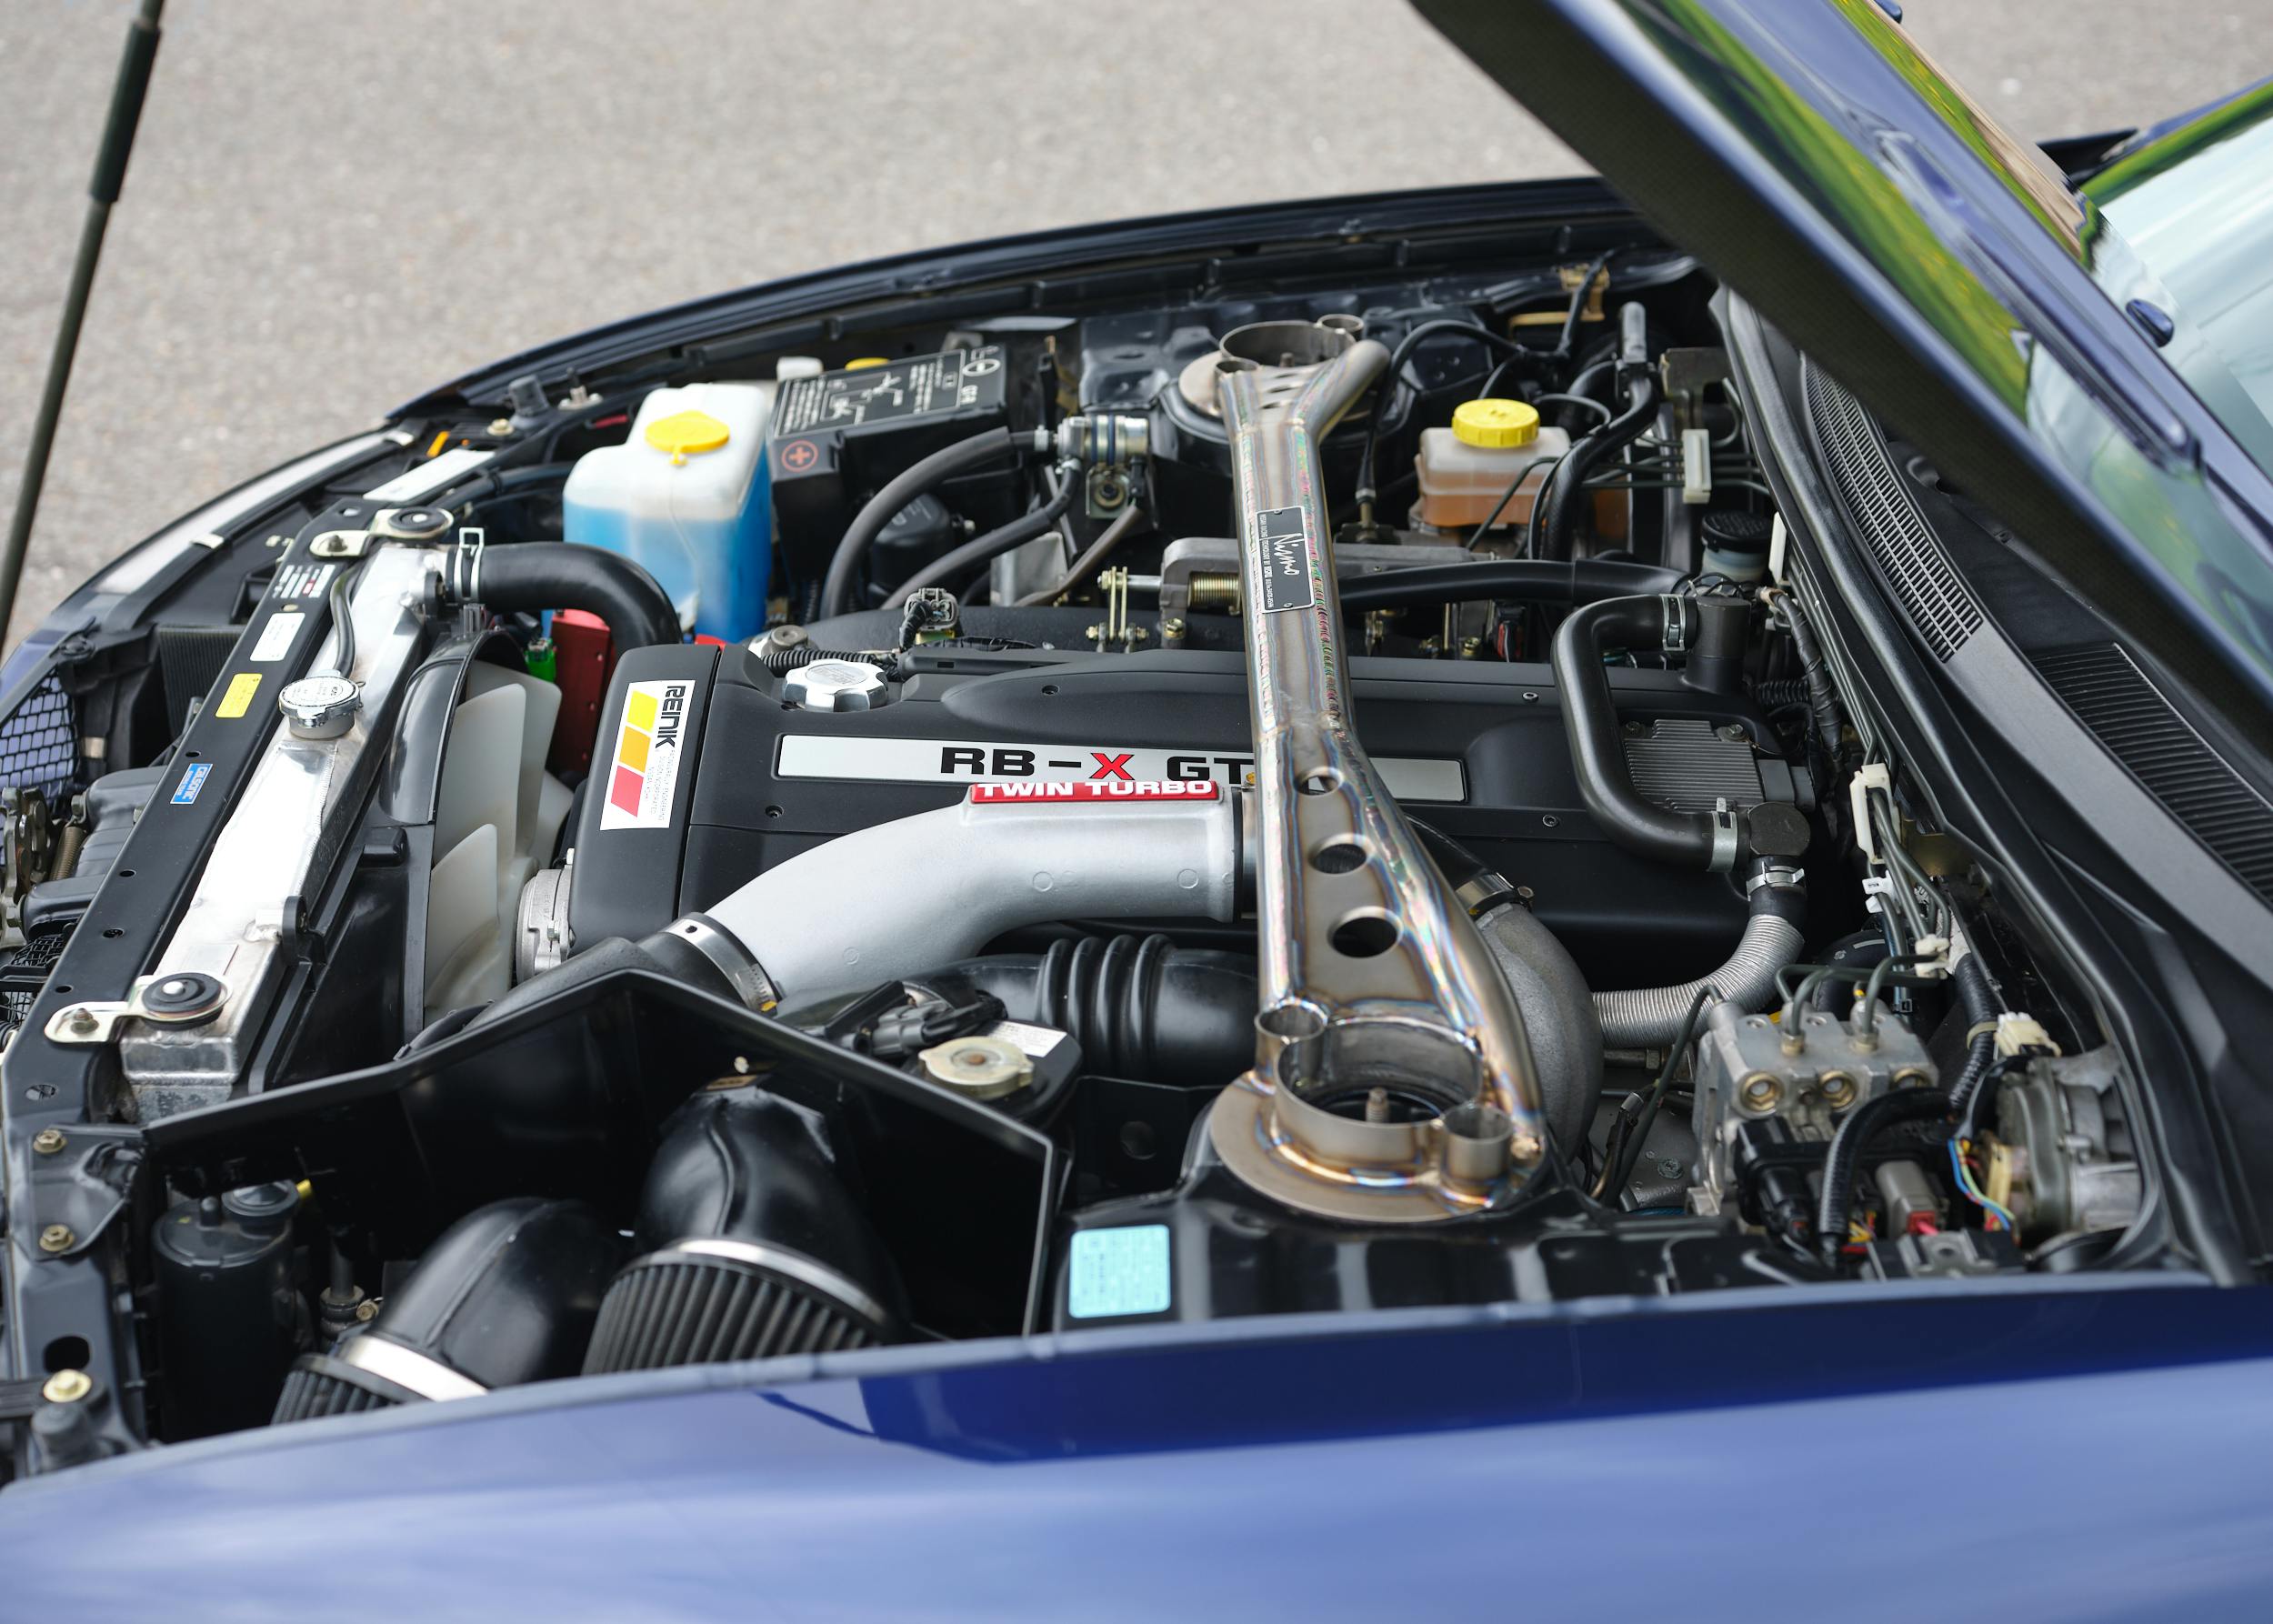 1996 Nissan Skyline R33 GT-R NISMO 400R engine bay side